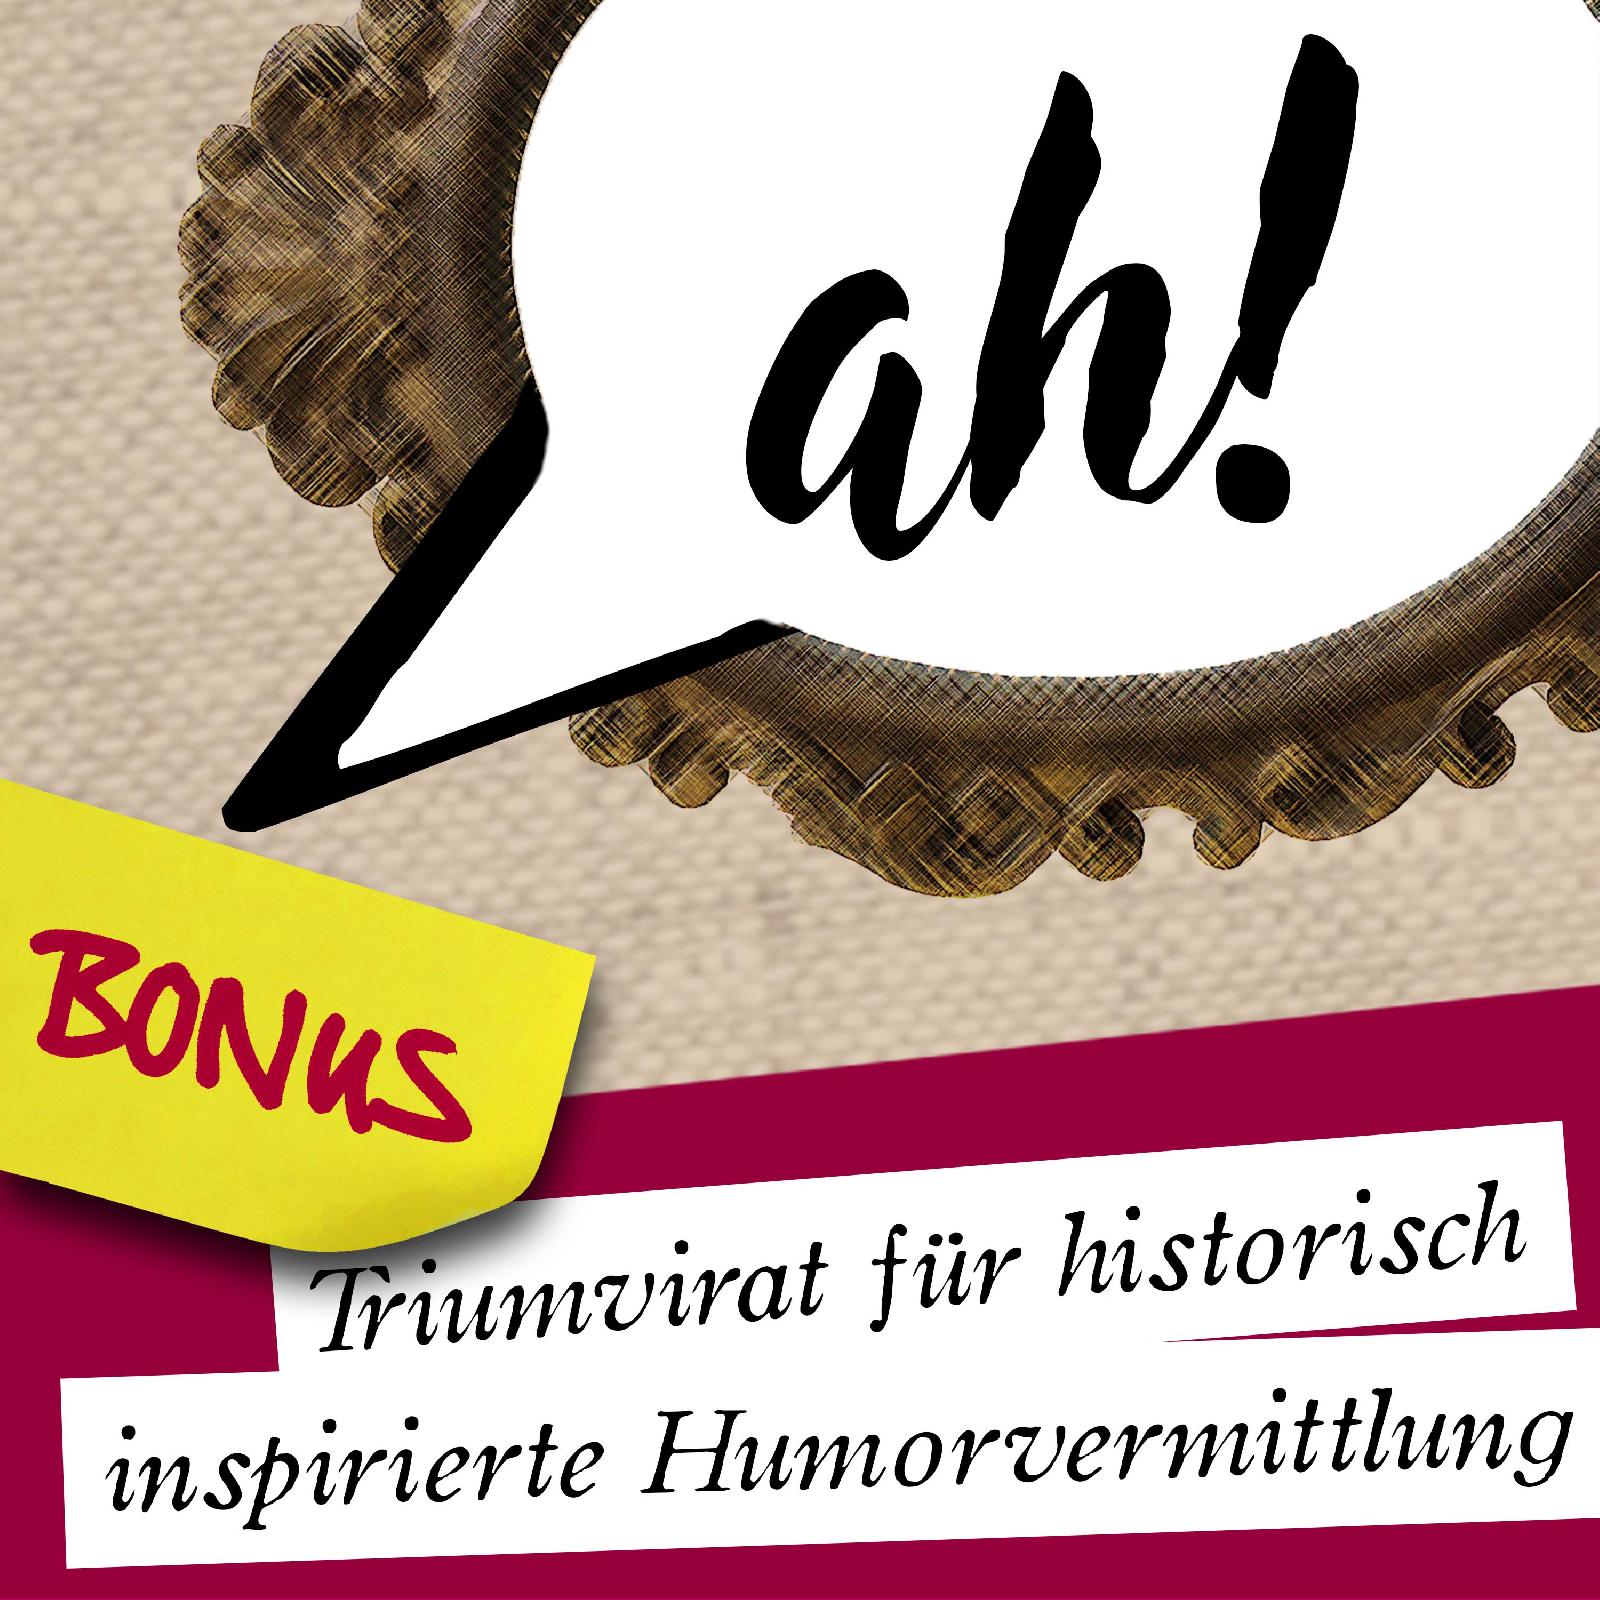 Ach-Podcast: BONUS 57: Wer bin ich? (feat. Björn von Hobbyquerschnitt)